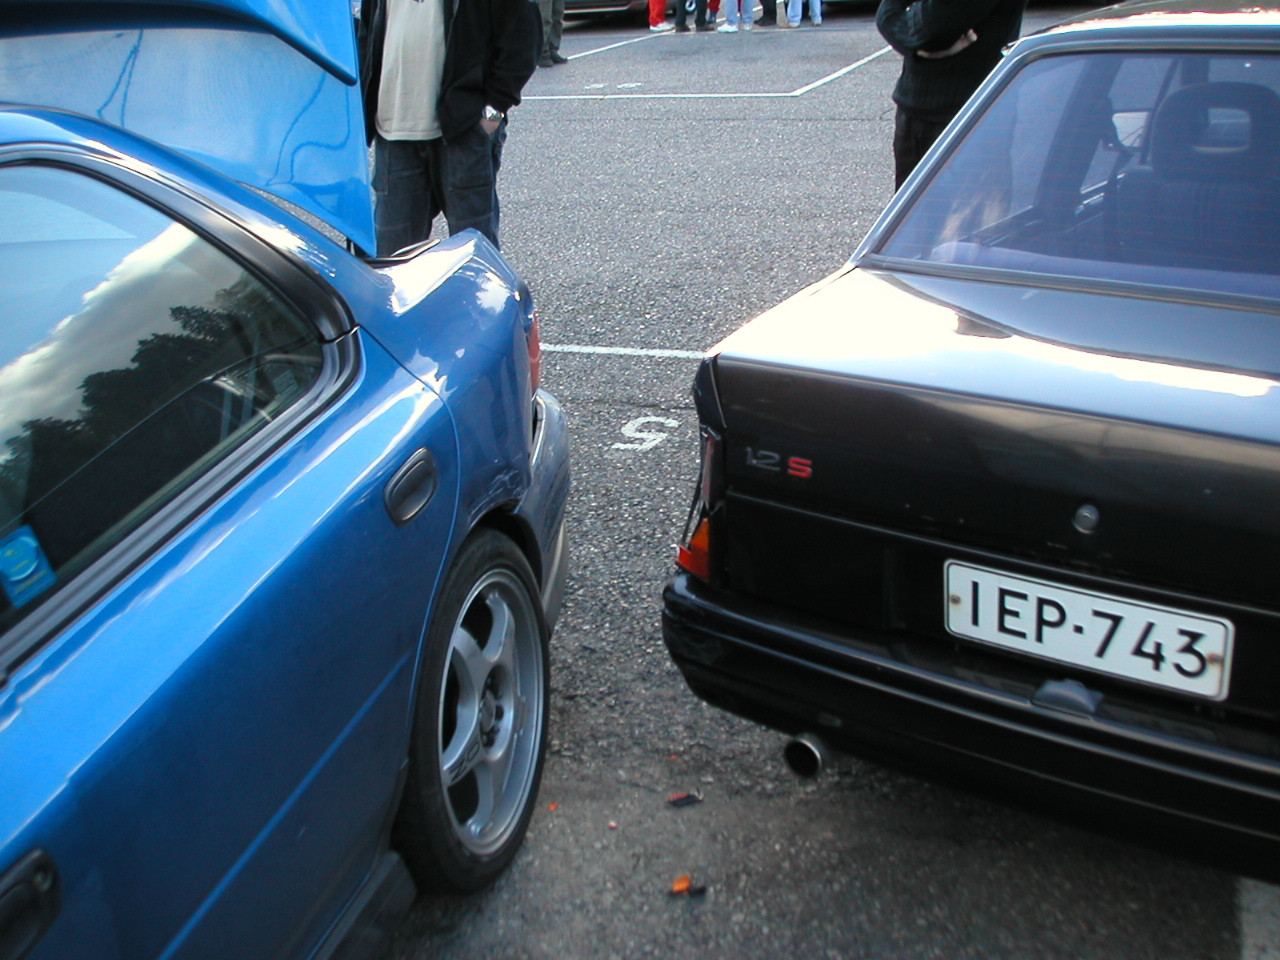 TAK ratapÃ¤ivÃ¤ 1.10.2004, Subaru sai hittiÃ¤ corsalta joka valui katoksen alta ilman kuljettajaa.